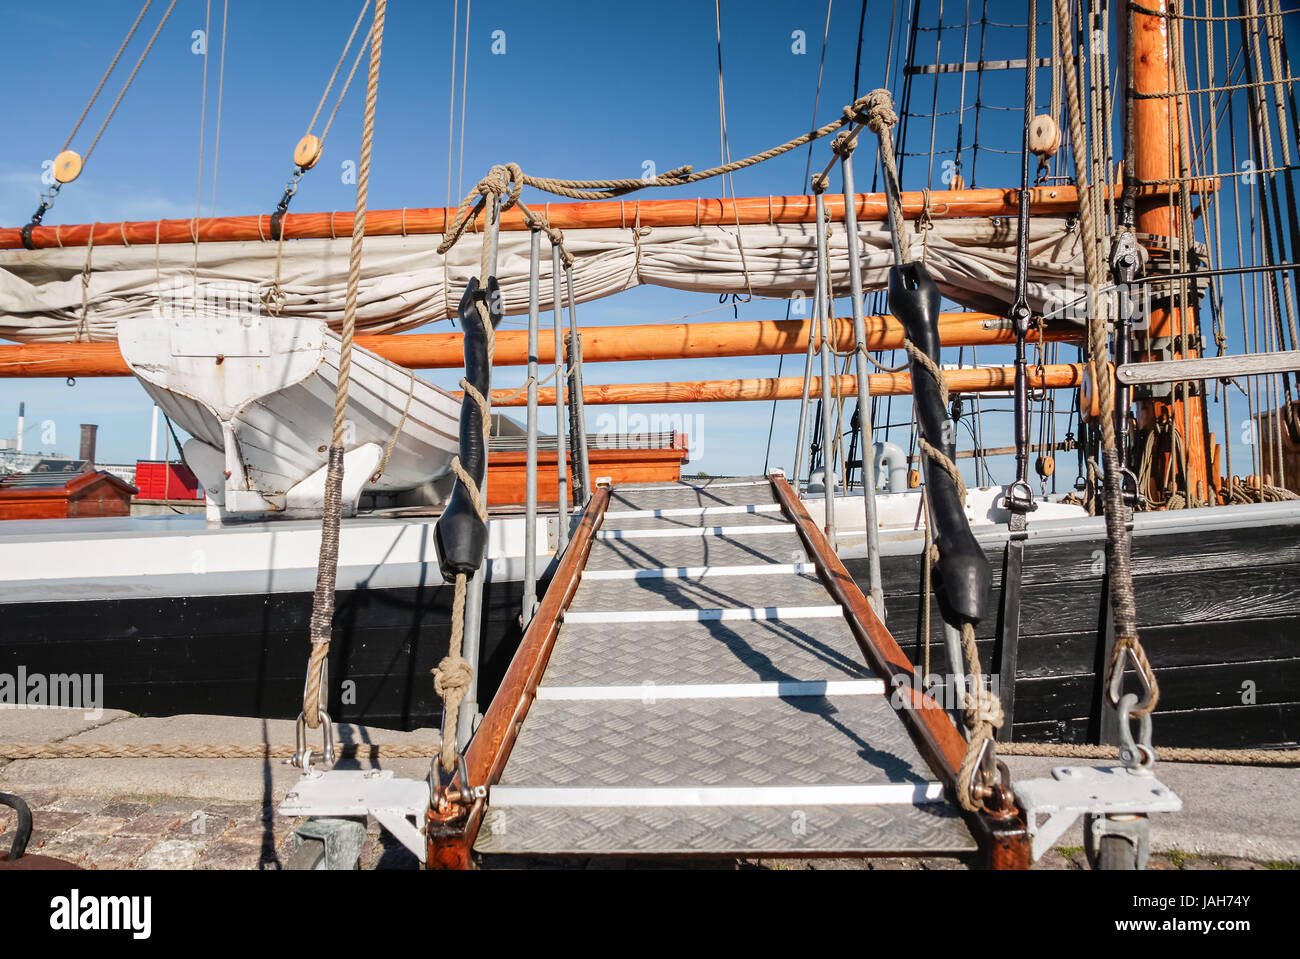 Steg zu einem großen Segelschiff in Amaliehaven, Kopenhagen, Dänemark Foto Stock